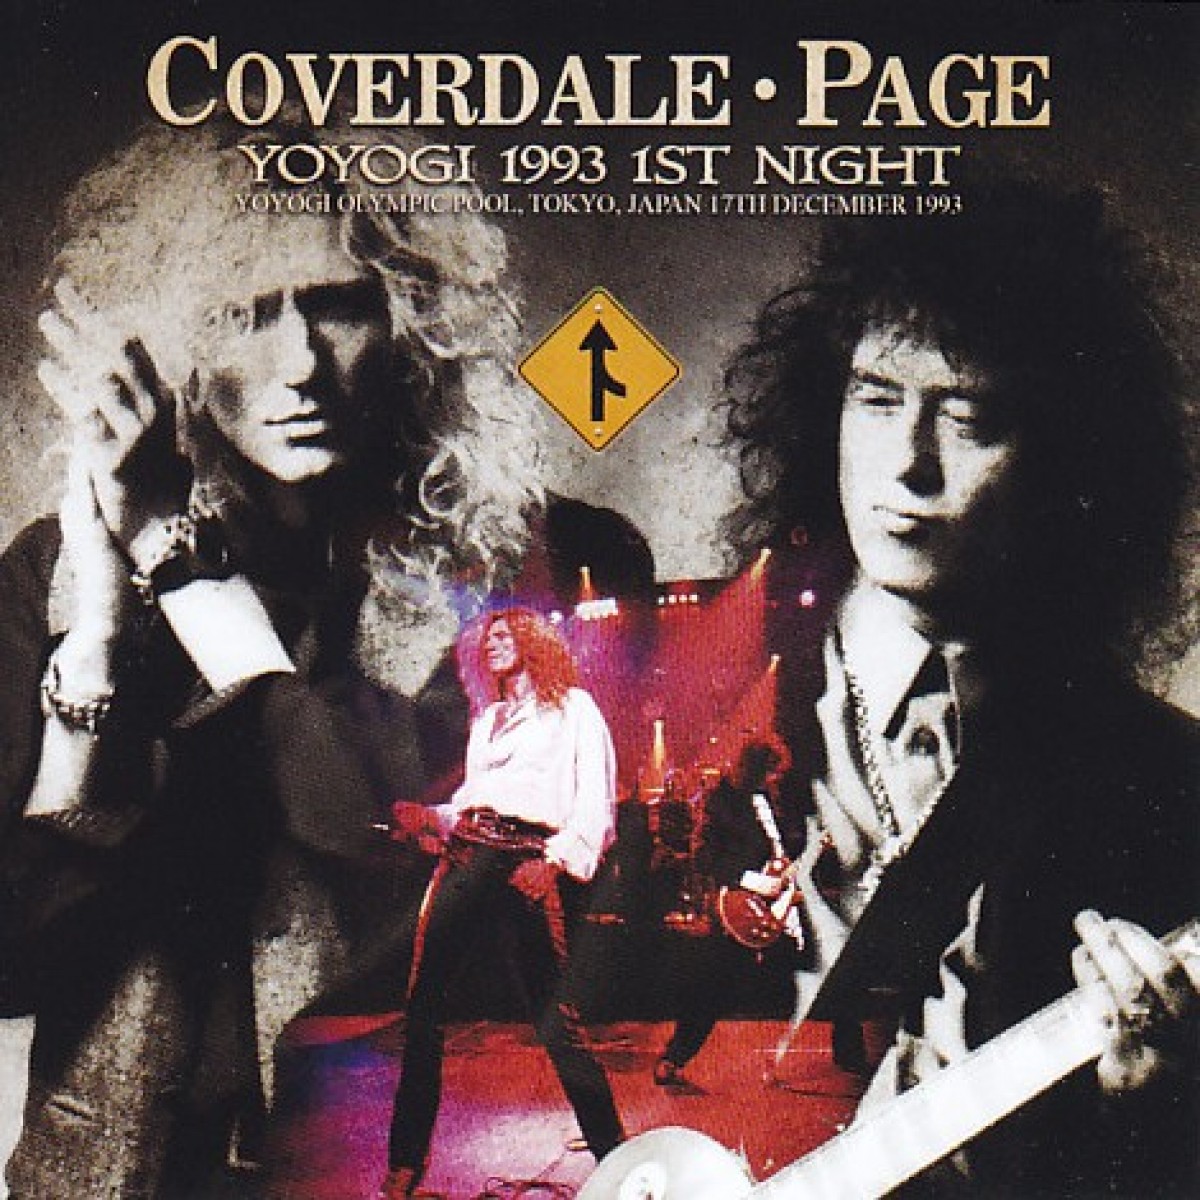 La idea original del projecte Coverdale/Page va sorgir d’un dels talents més grans de la industria dels anys 80 i 90, John Kalodner.